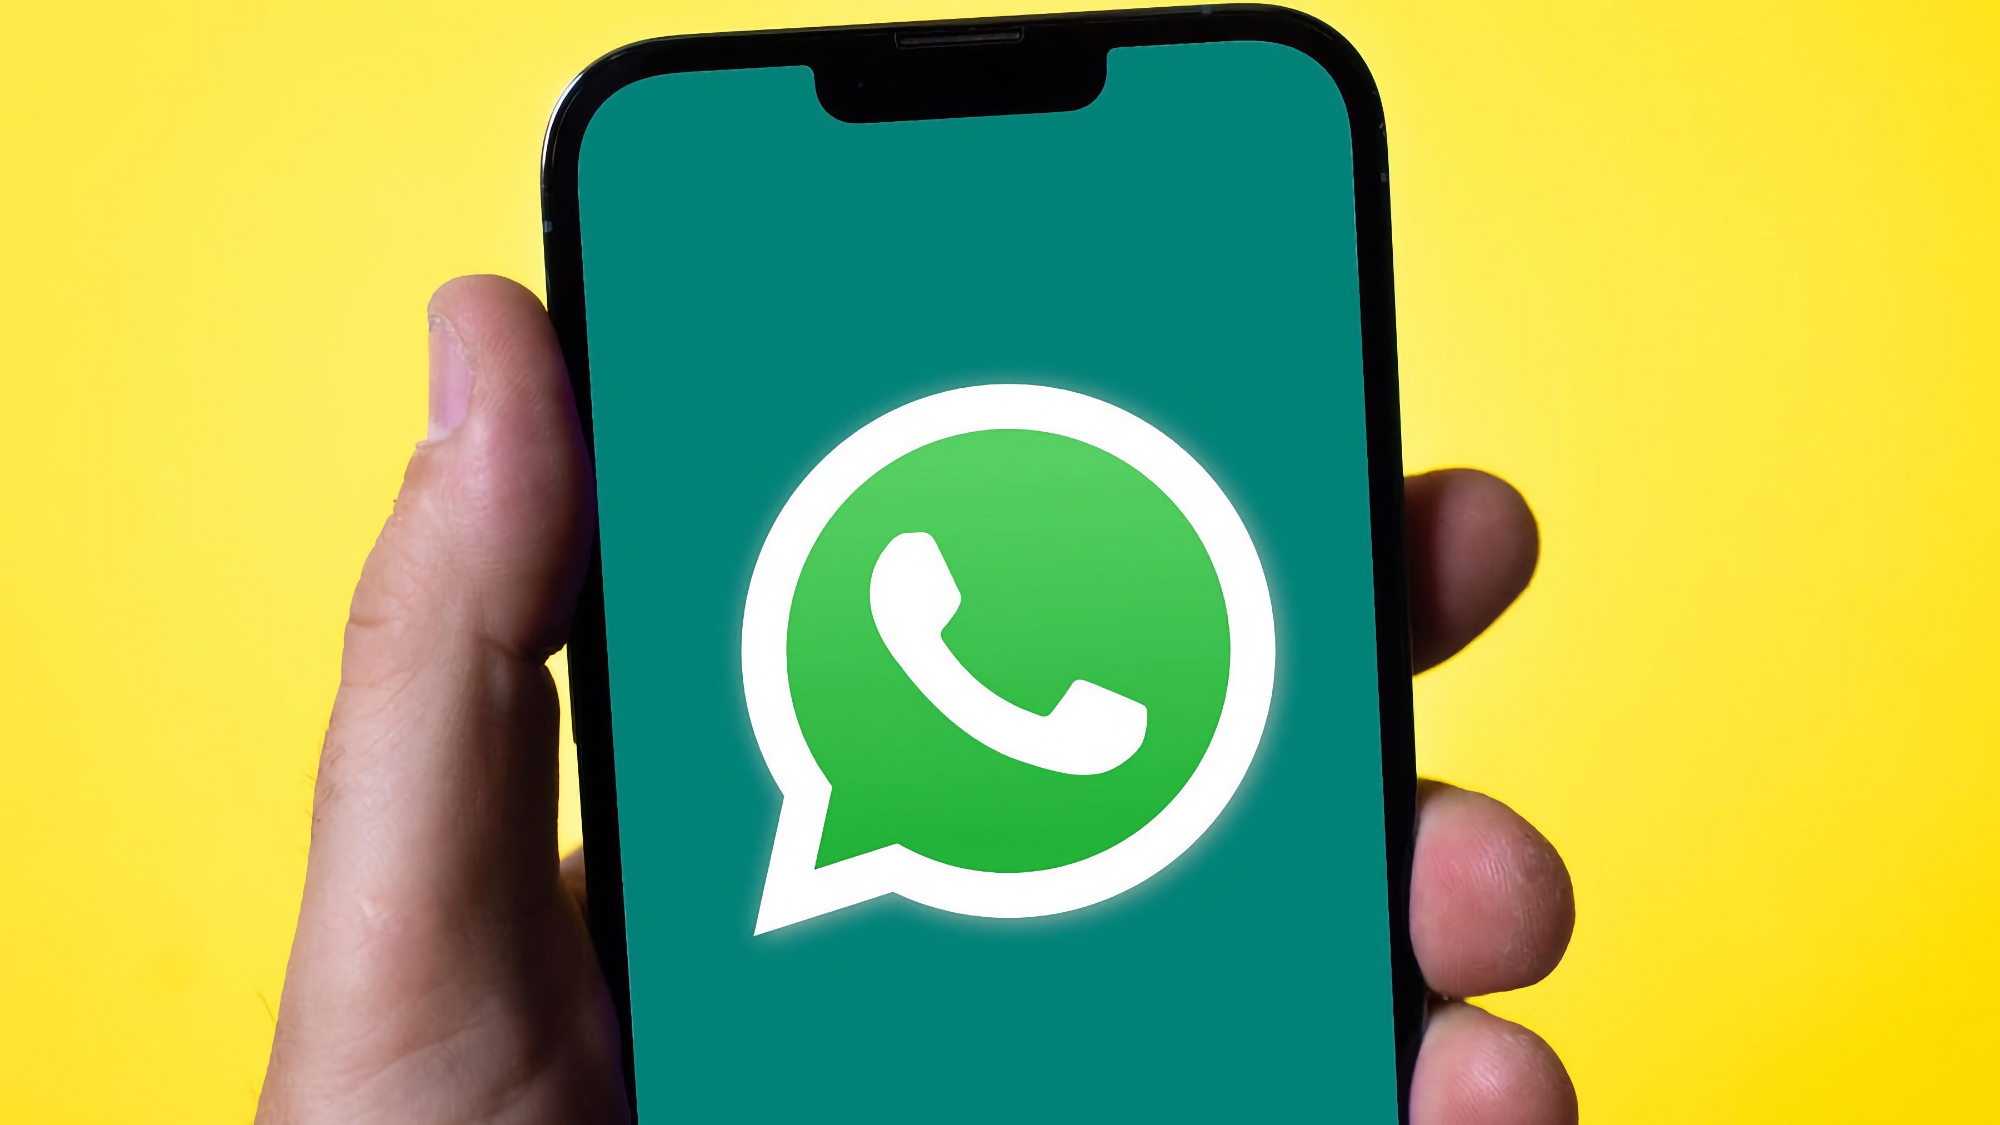 Користувачі iPhone отримали підтримку функції "Картинка в картинці" для відеодзвінків у WhatsApp